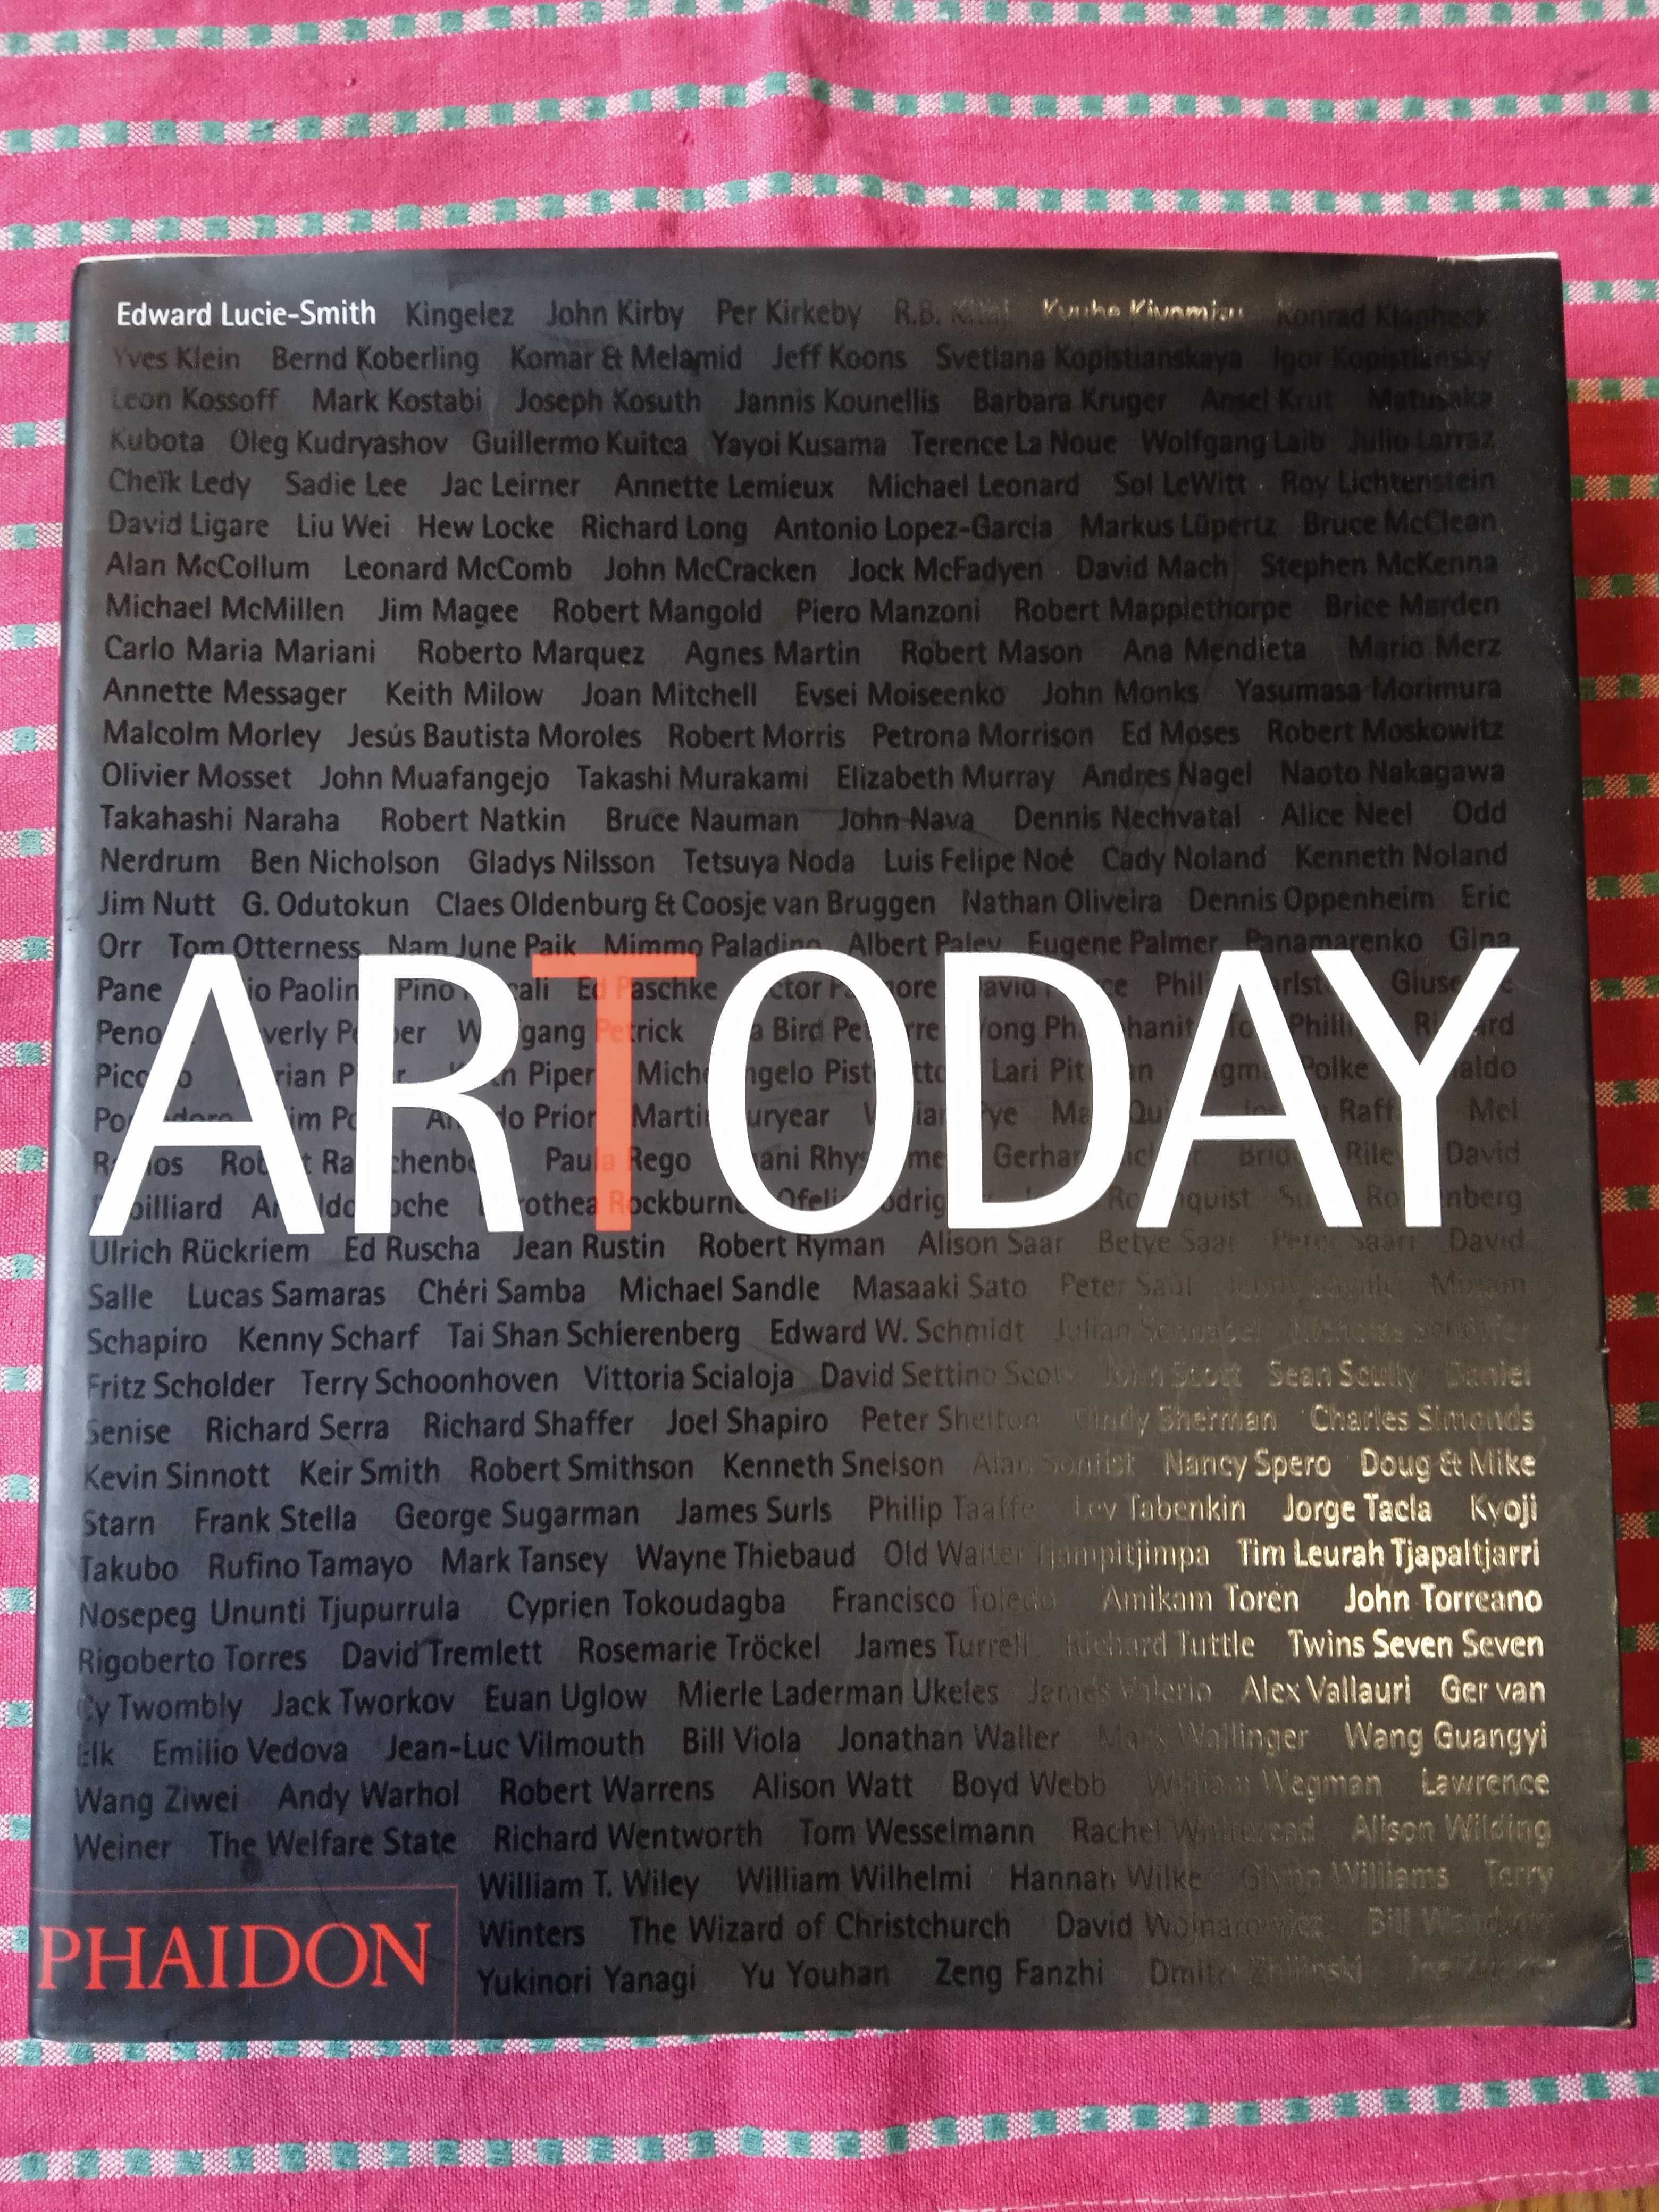 Livro sobre Arte contemporânea "Artoday"